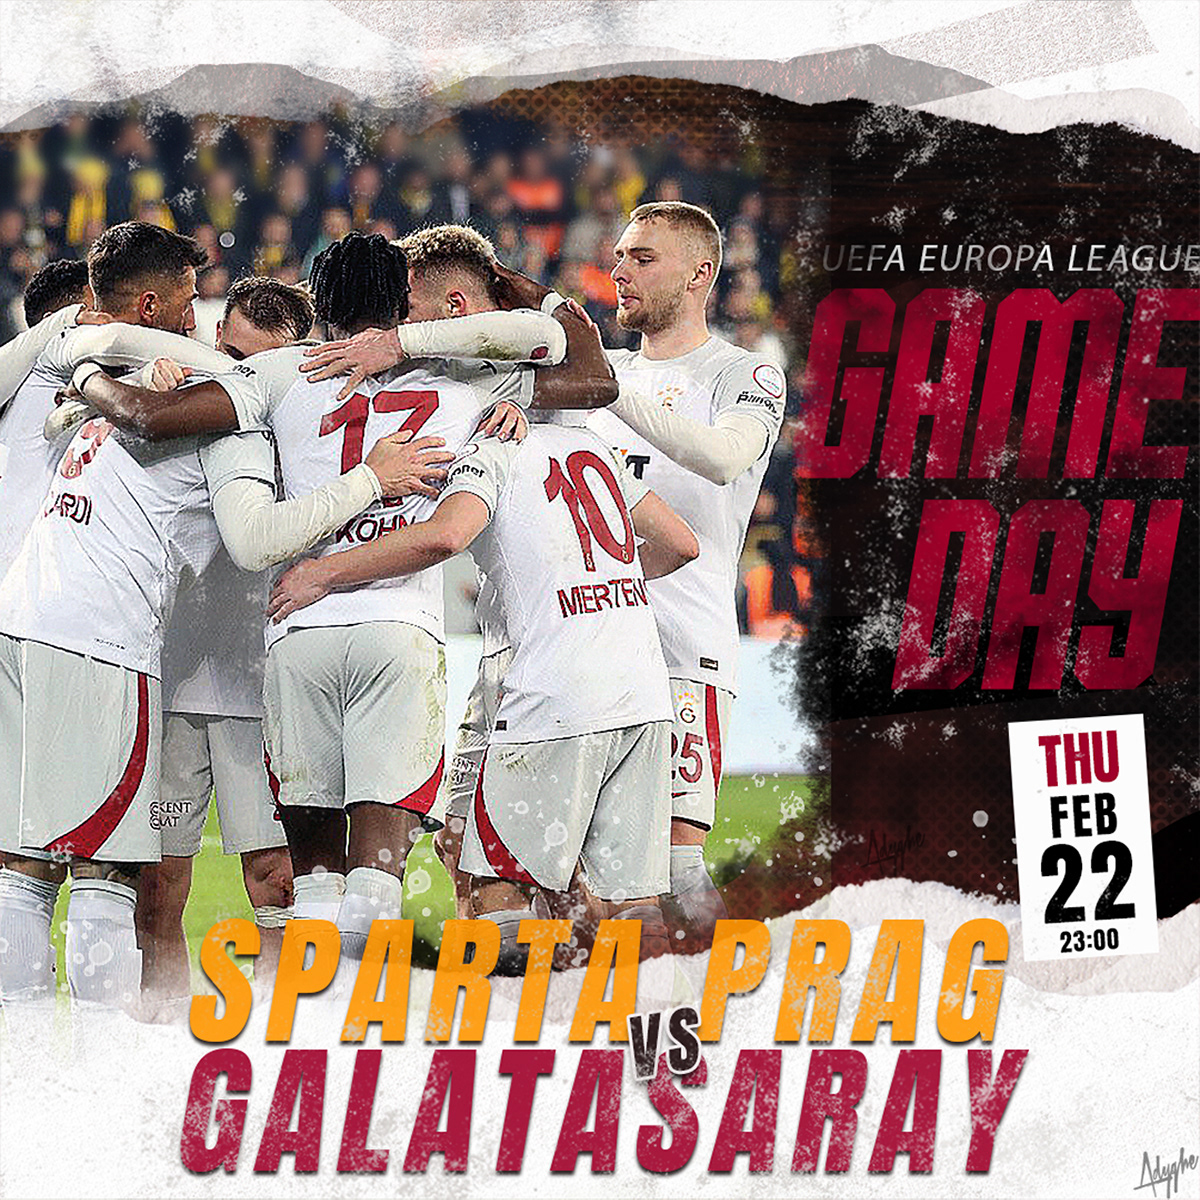 poster matchday galatasaray uefa football